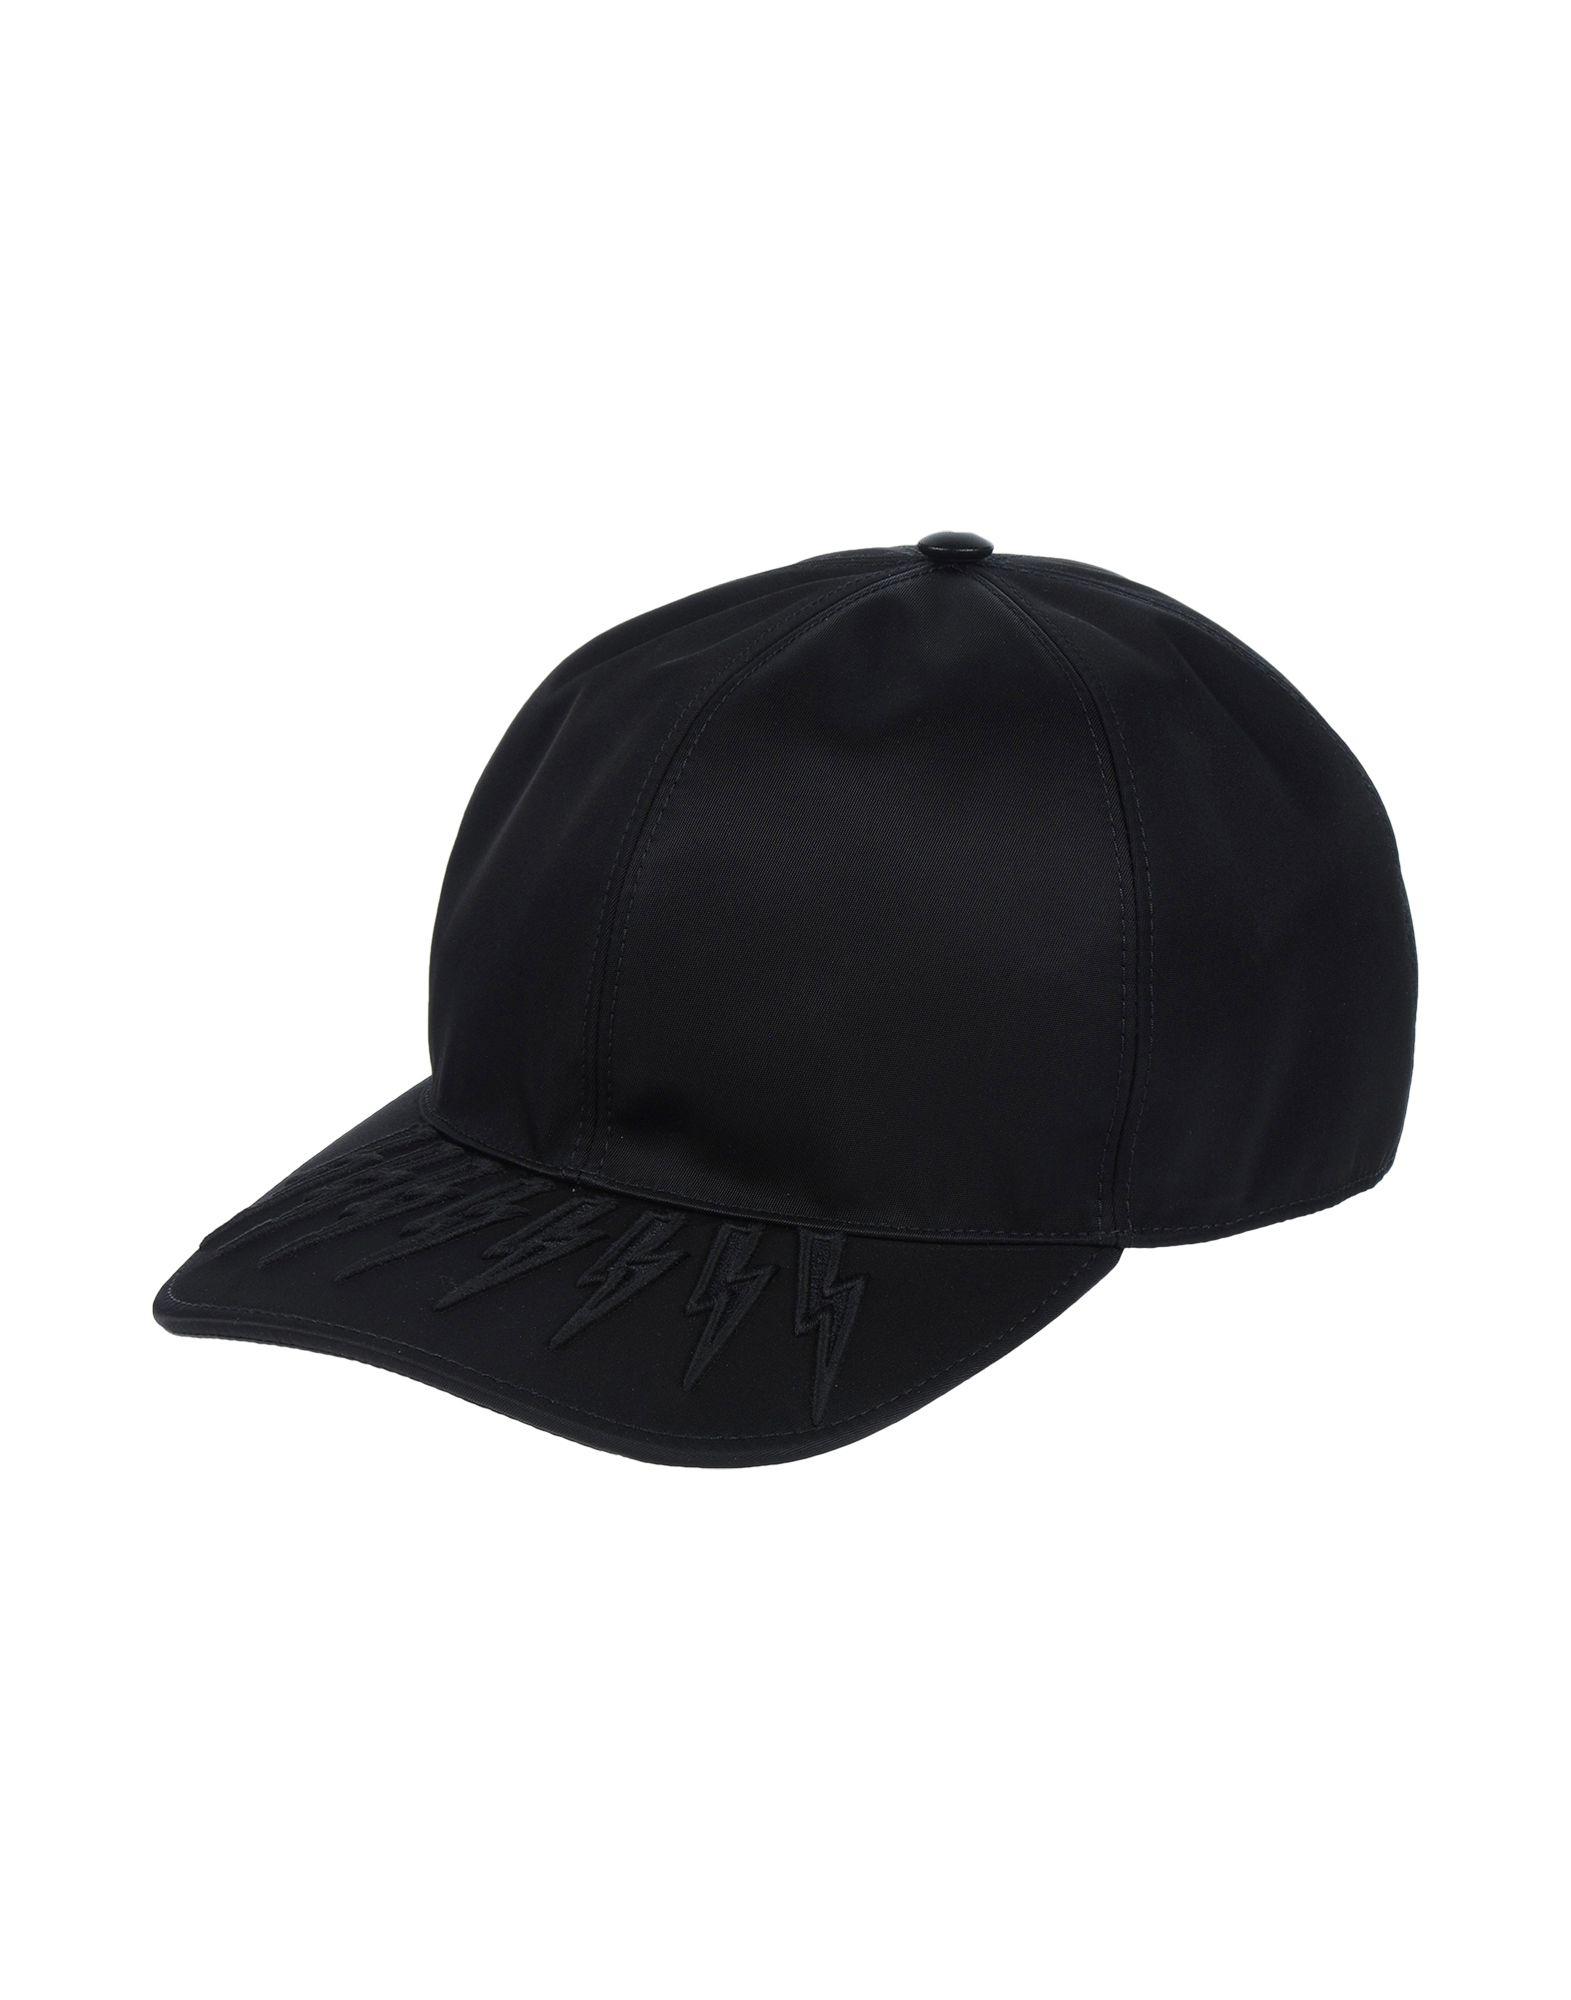 Neil Barrett Synthetic Hat in Black for Men - Lyst